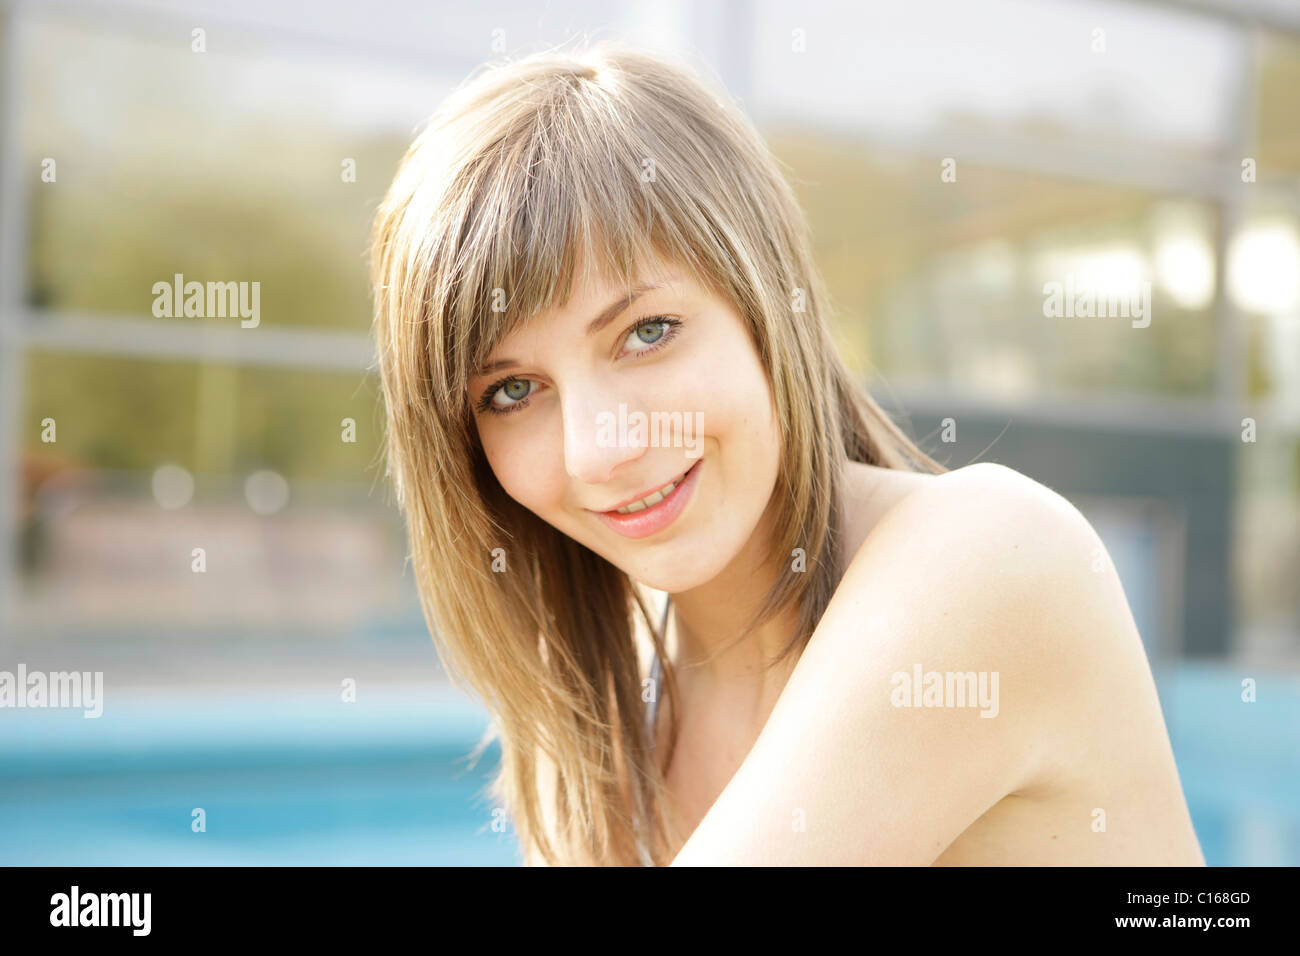 Diciannove-anno-vecchia ragazza in un parco d'acqua sorridente nella fotocamera Foto Stock